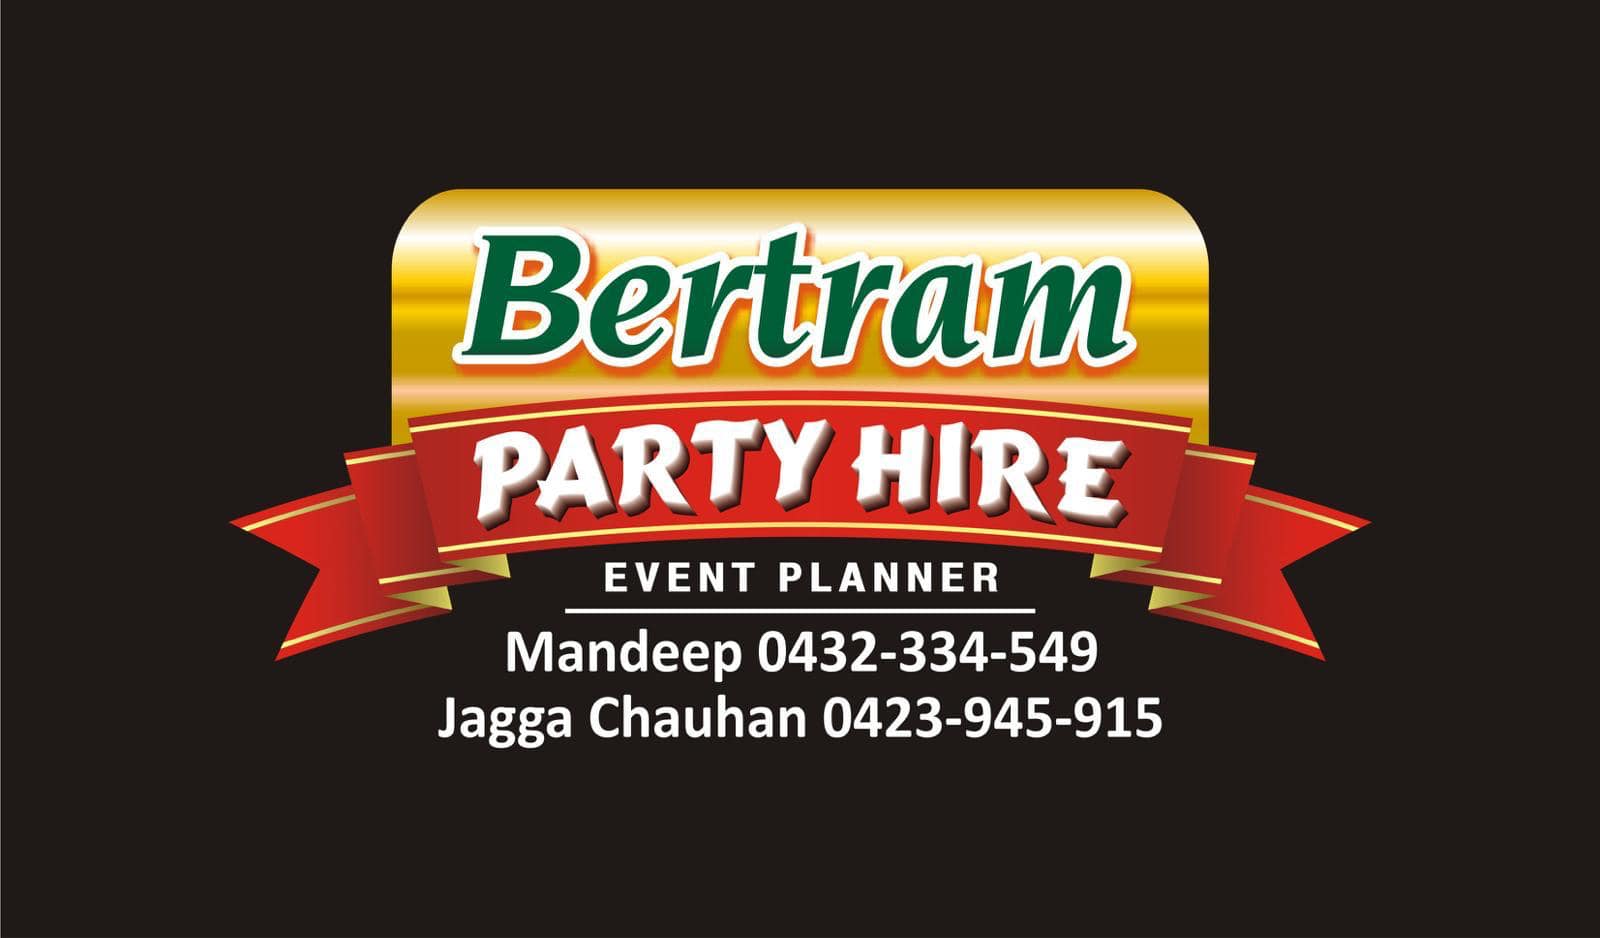 Bertram Party Hire